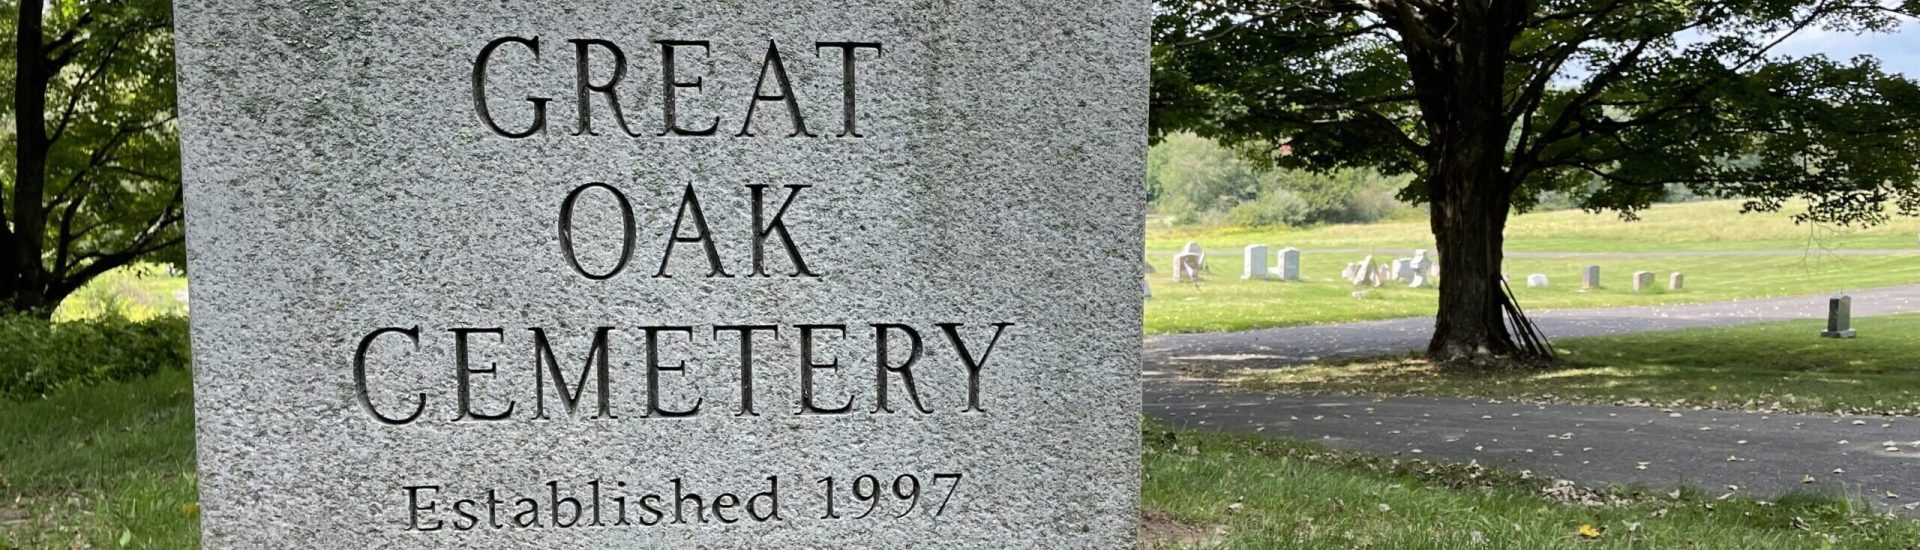 Great Oak Cemetery, Roxbury, CT